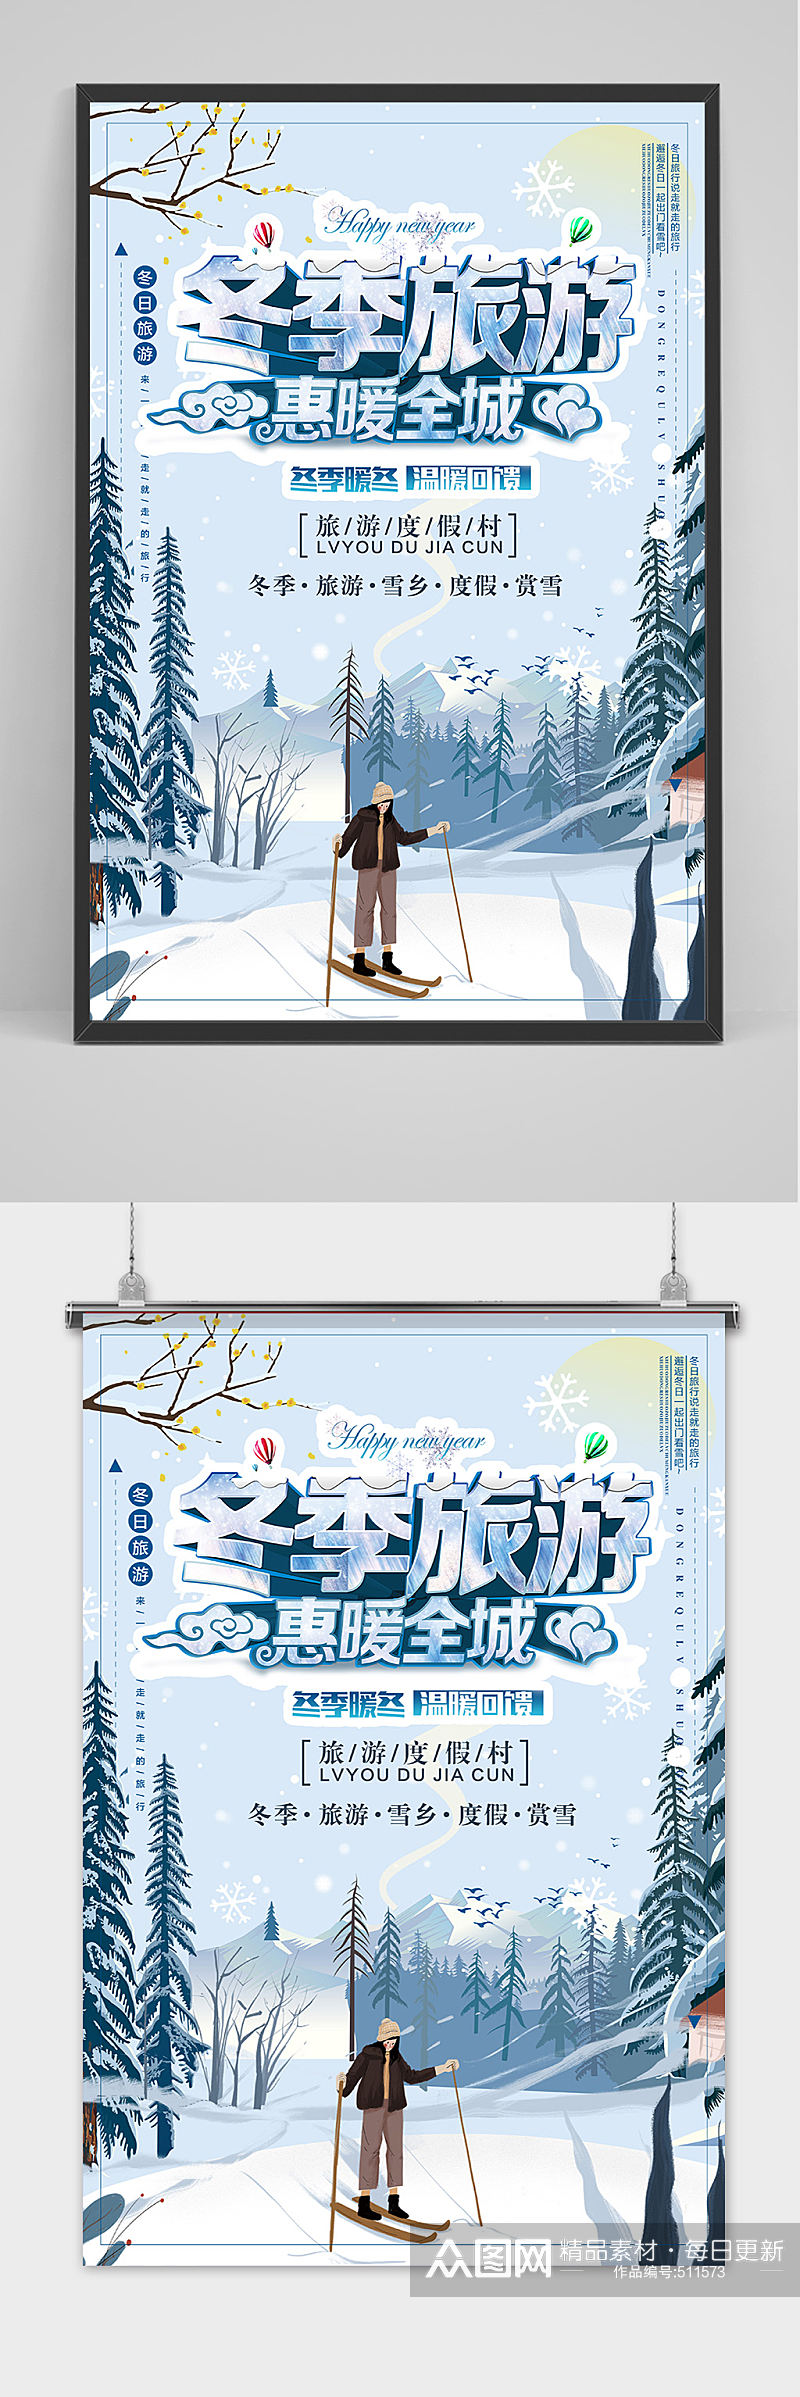 淡雅冬季旅游海报设计素材